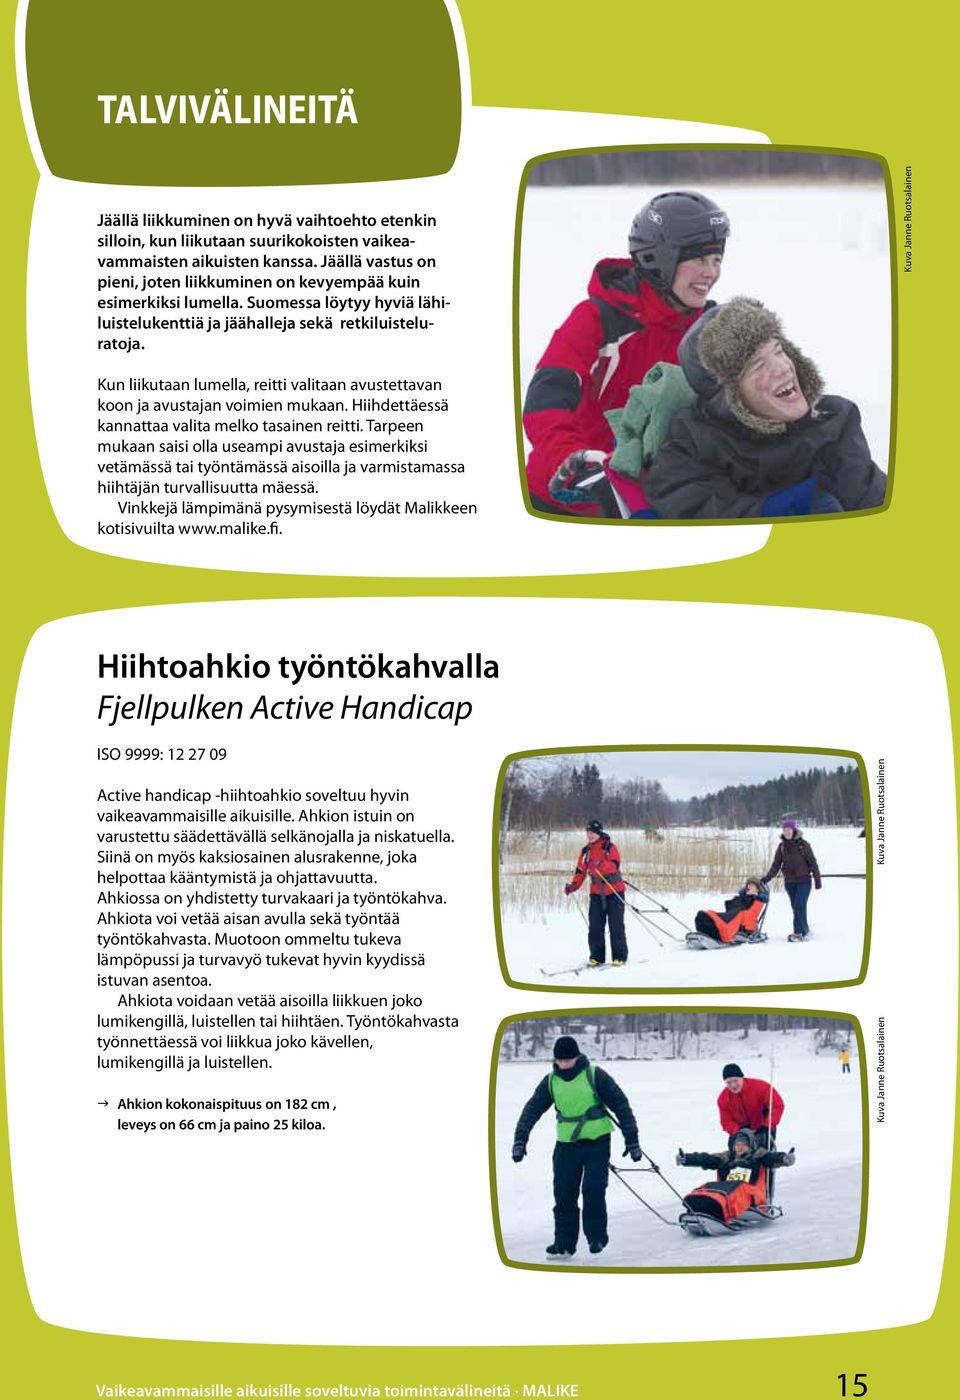 Kuva Janne Ruotsalainen Kun liikutaan lumella, reitti valitaan avustettavan koon ja avustajan voimien mukaan. Hiihdettäessä kannattaa valita melko tasainen reitti.